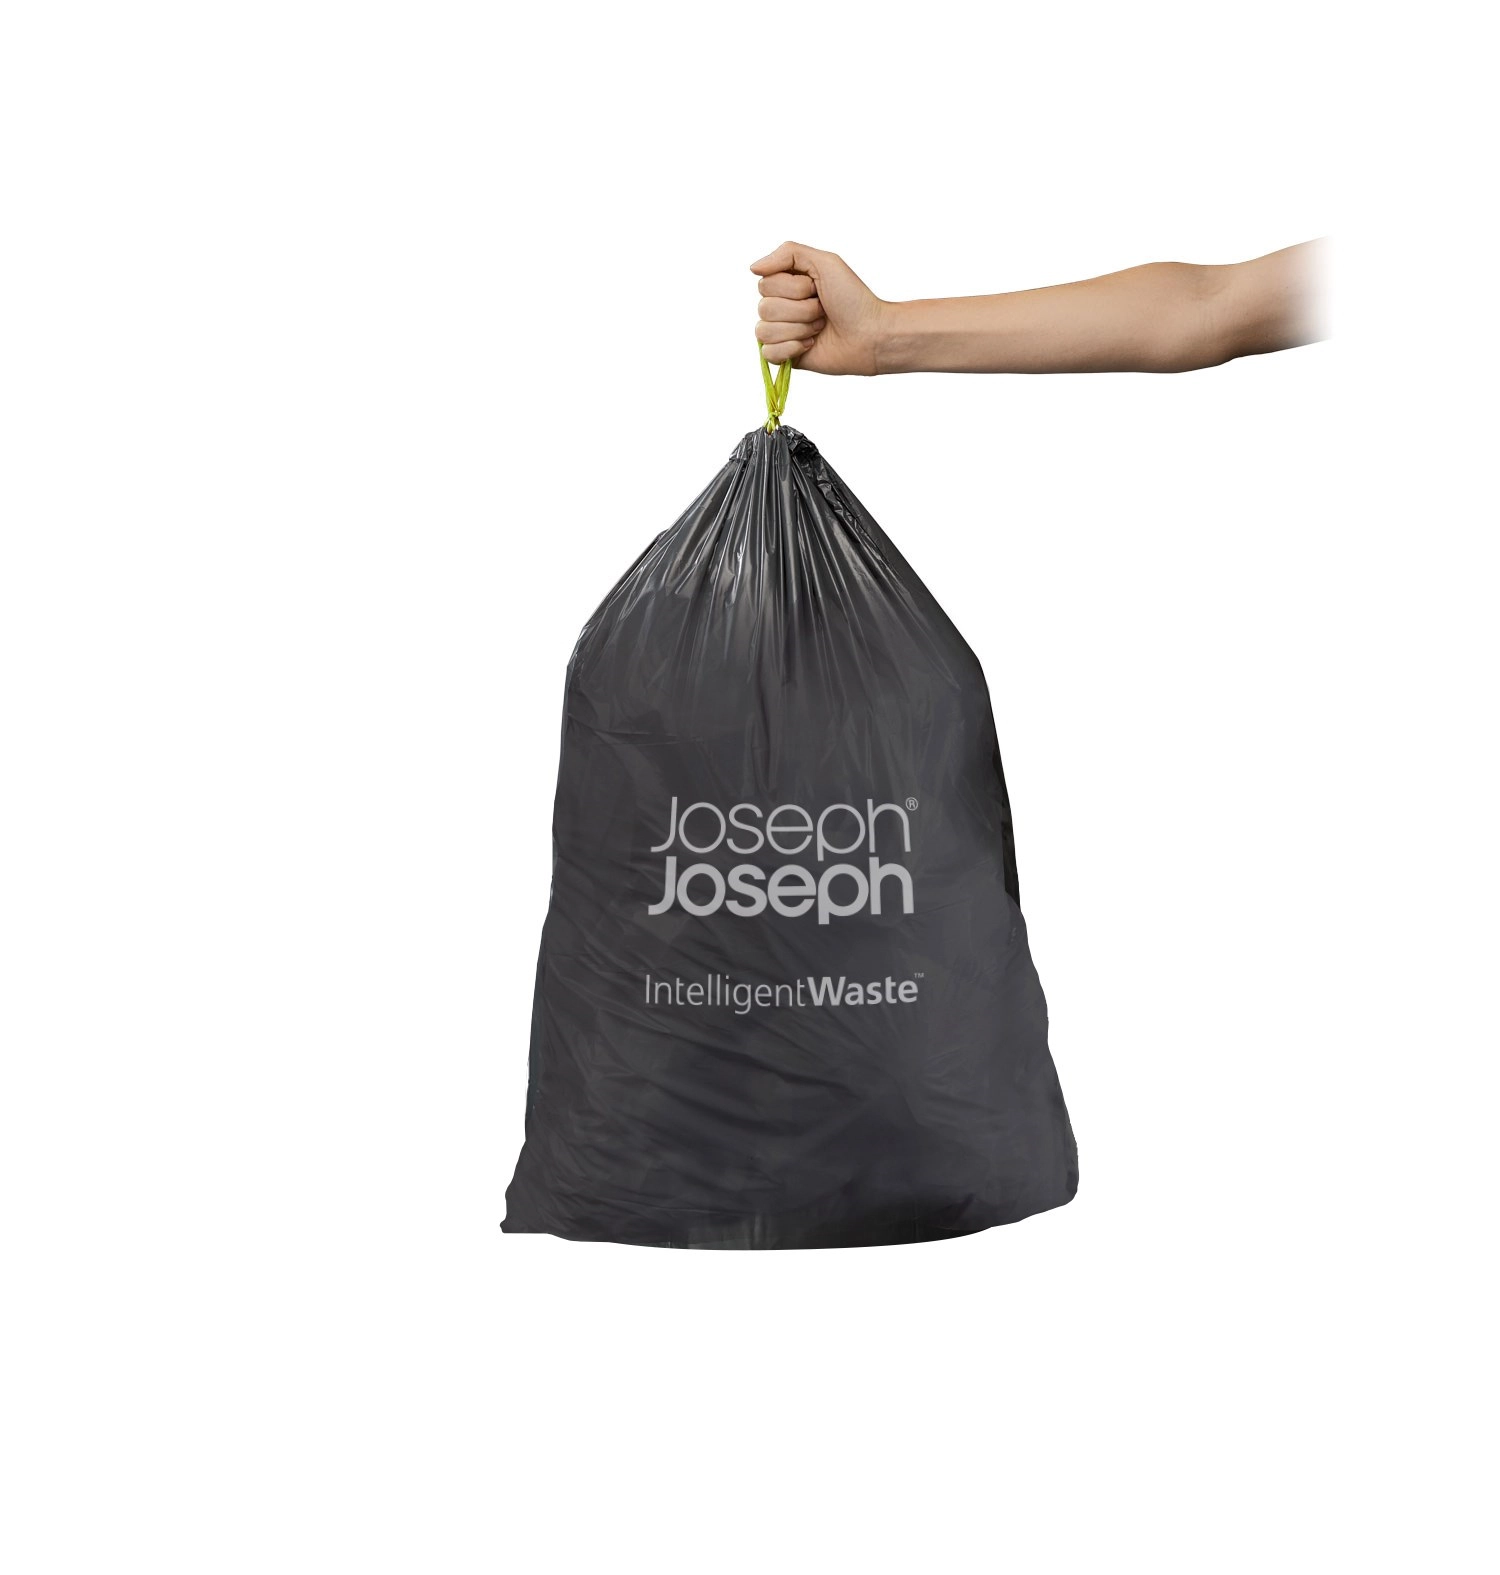 Joseph joseph iw1 sacs poubelles de 24-36 litres (paquet de